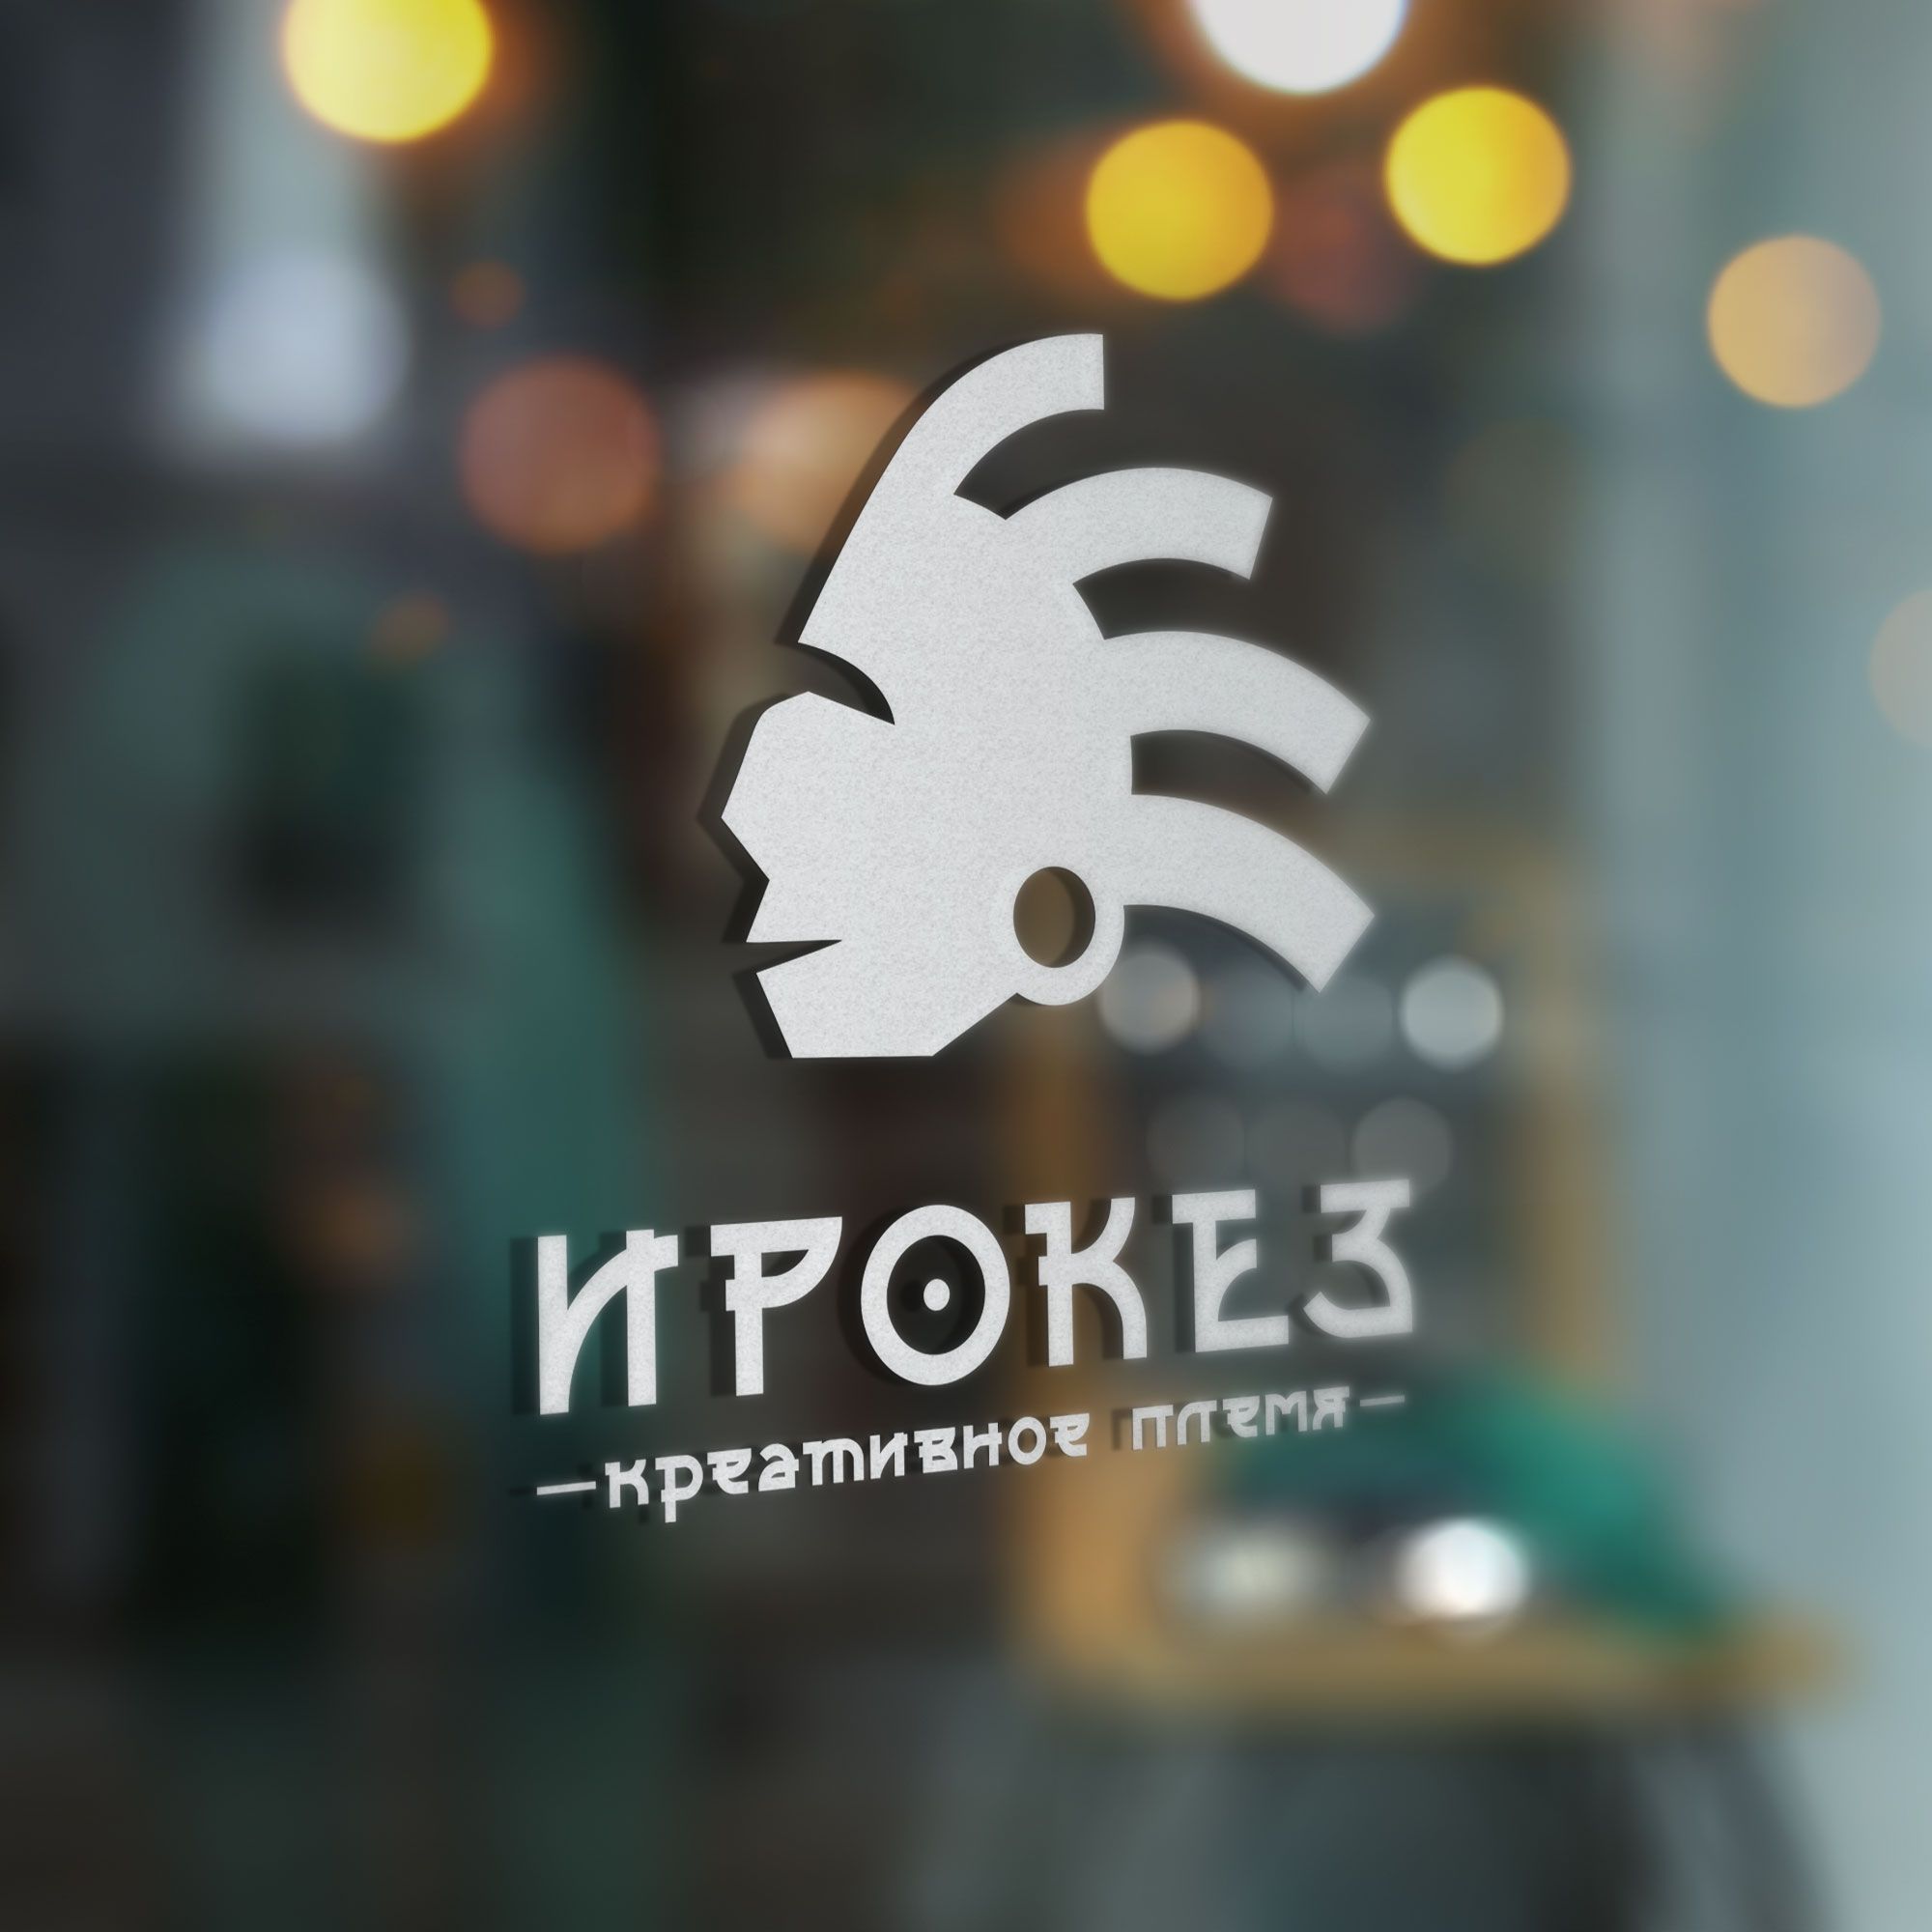 Редизайн лого и дизайн ФС для типографии Ирокез - дизайнер TanOK1